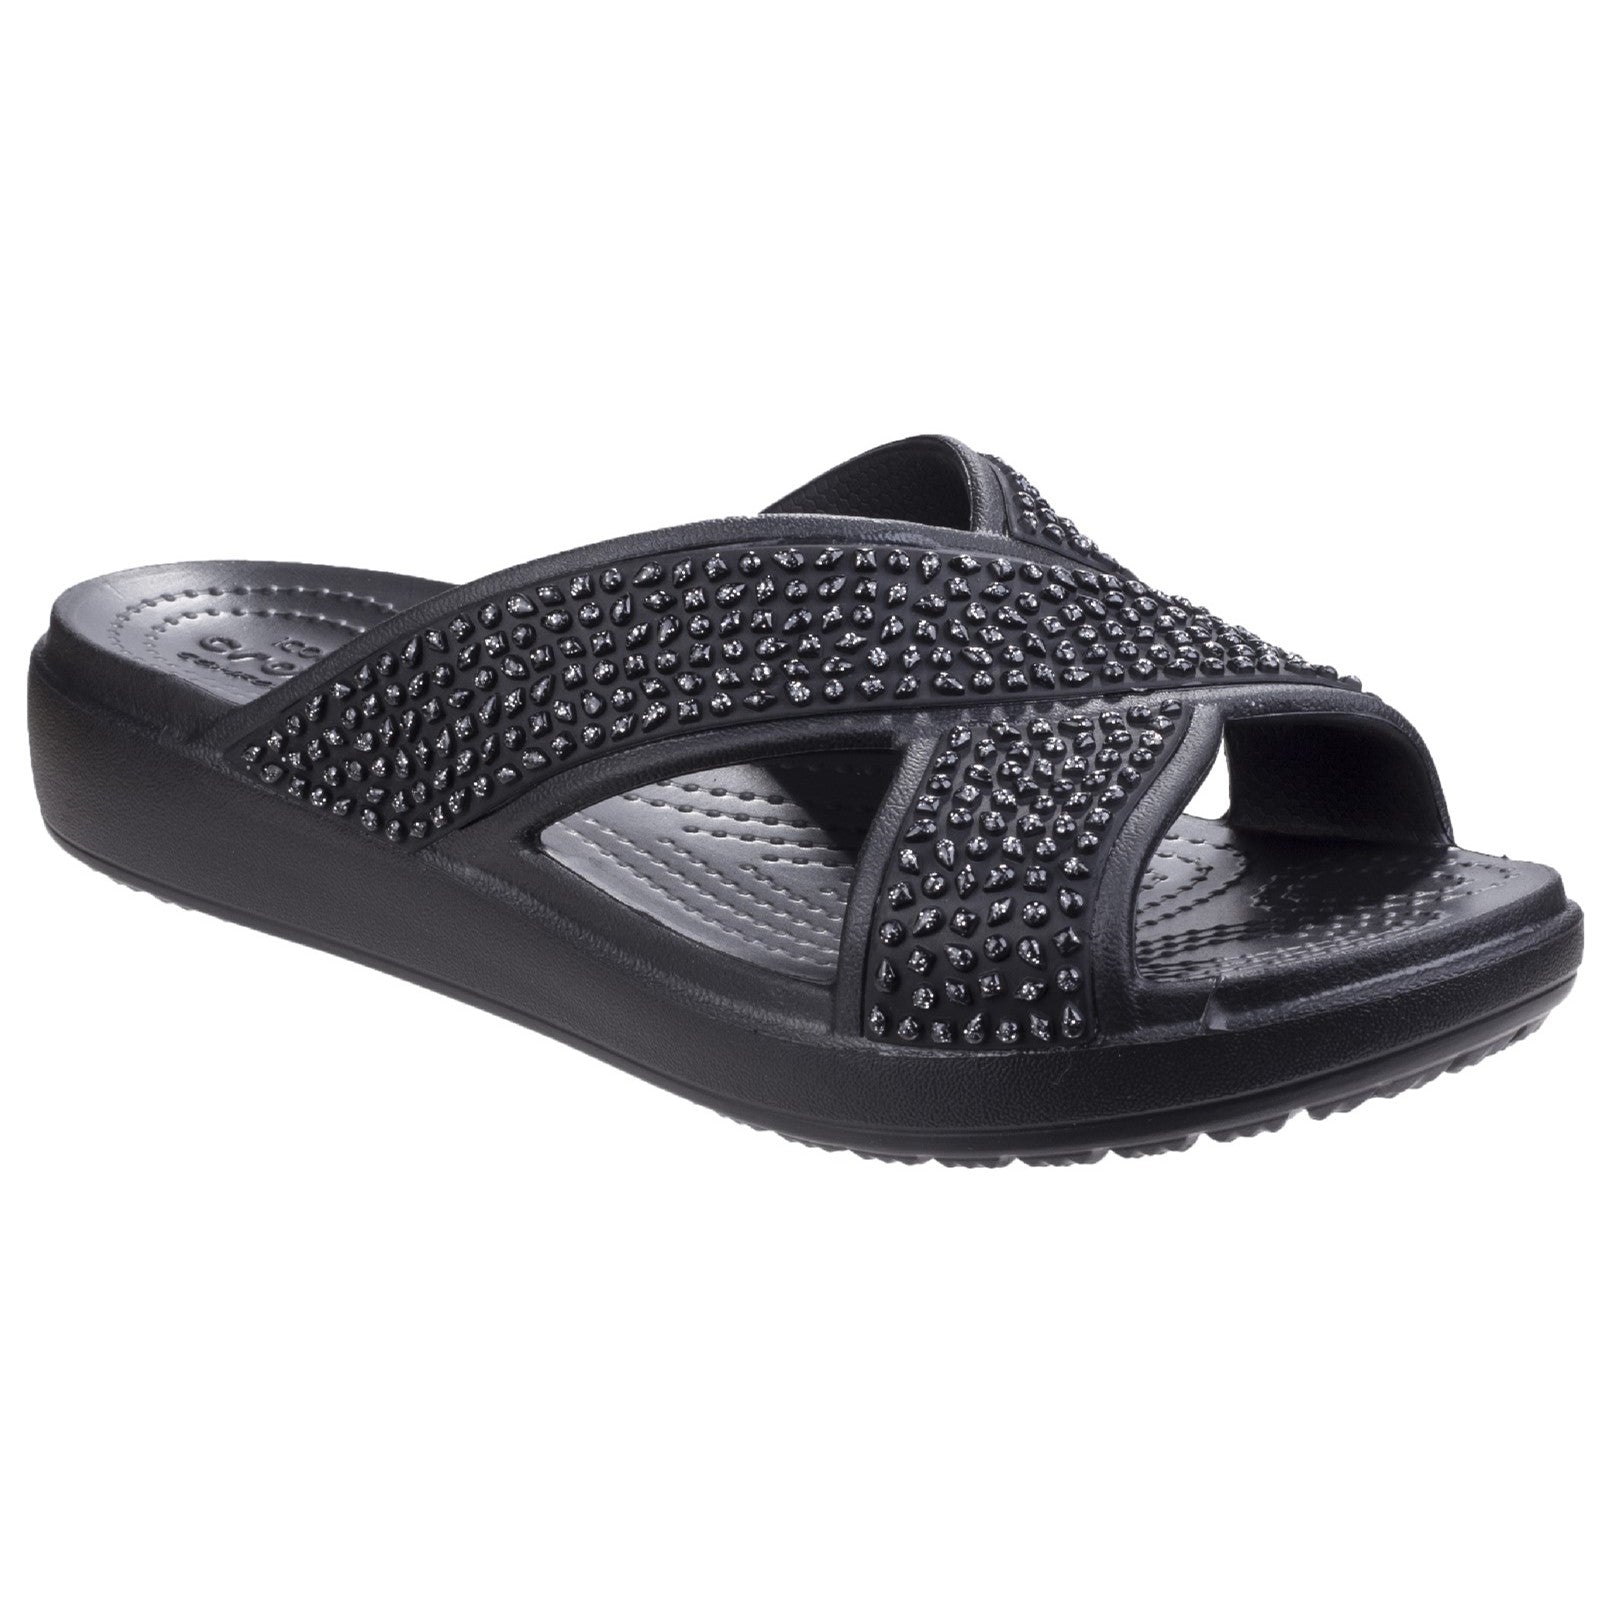 Crocs Sloane Embellished X Strap Sandals